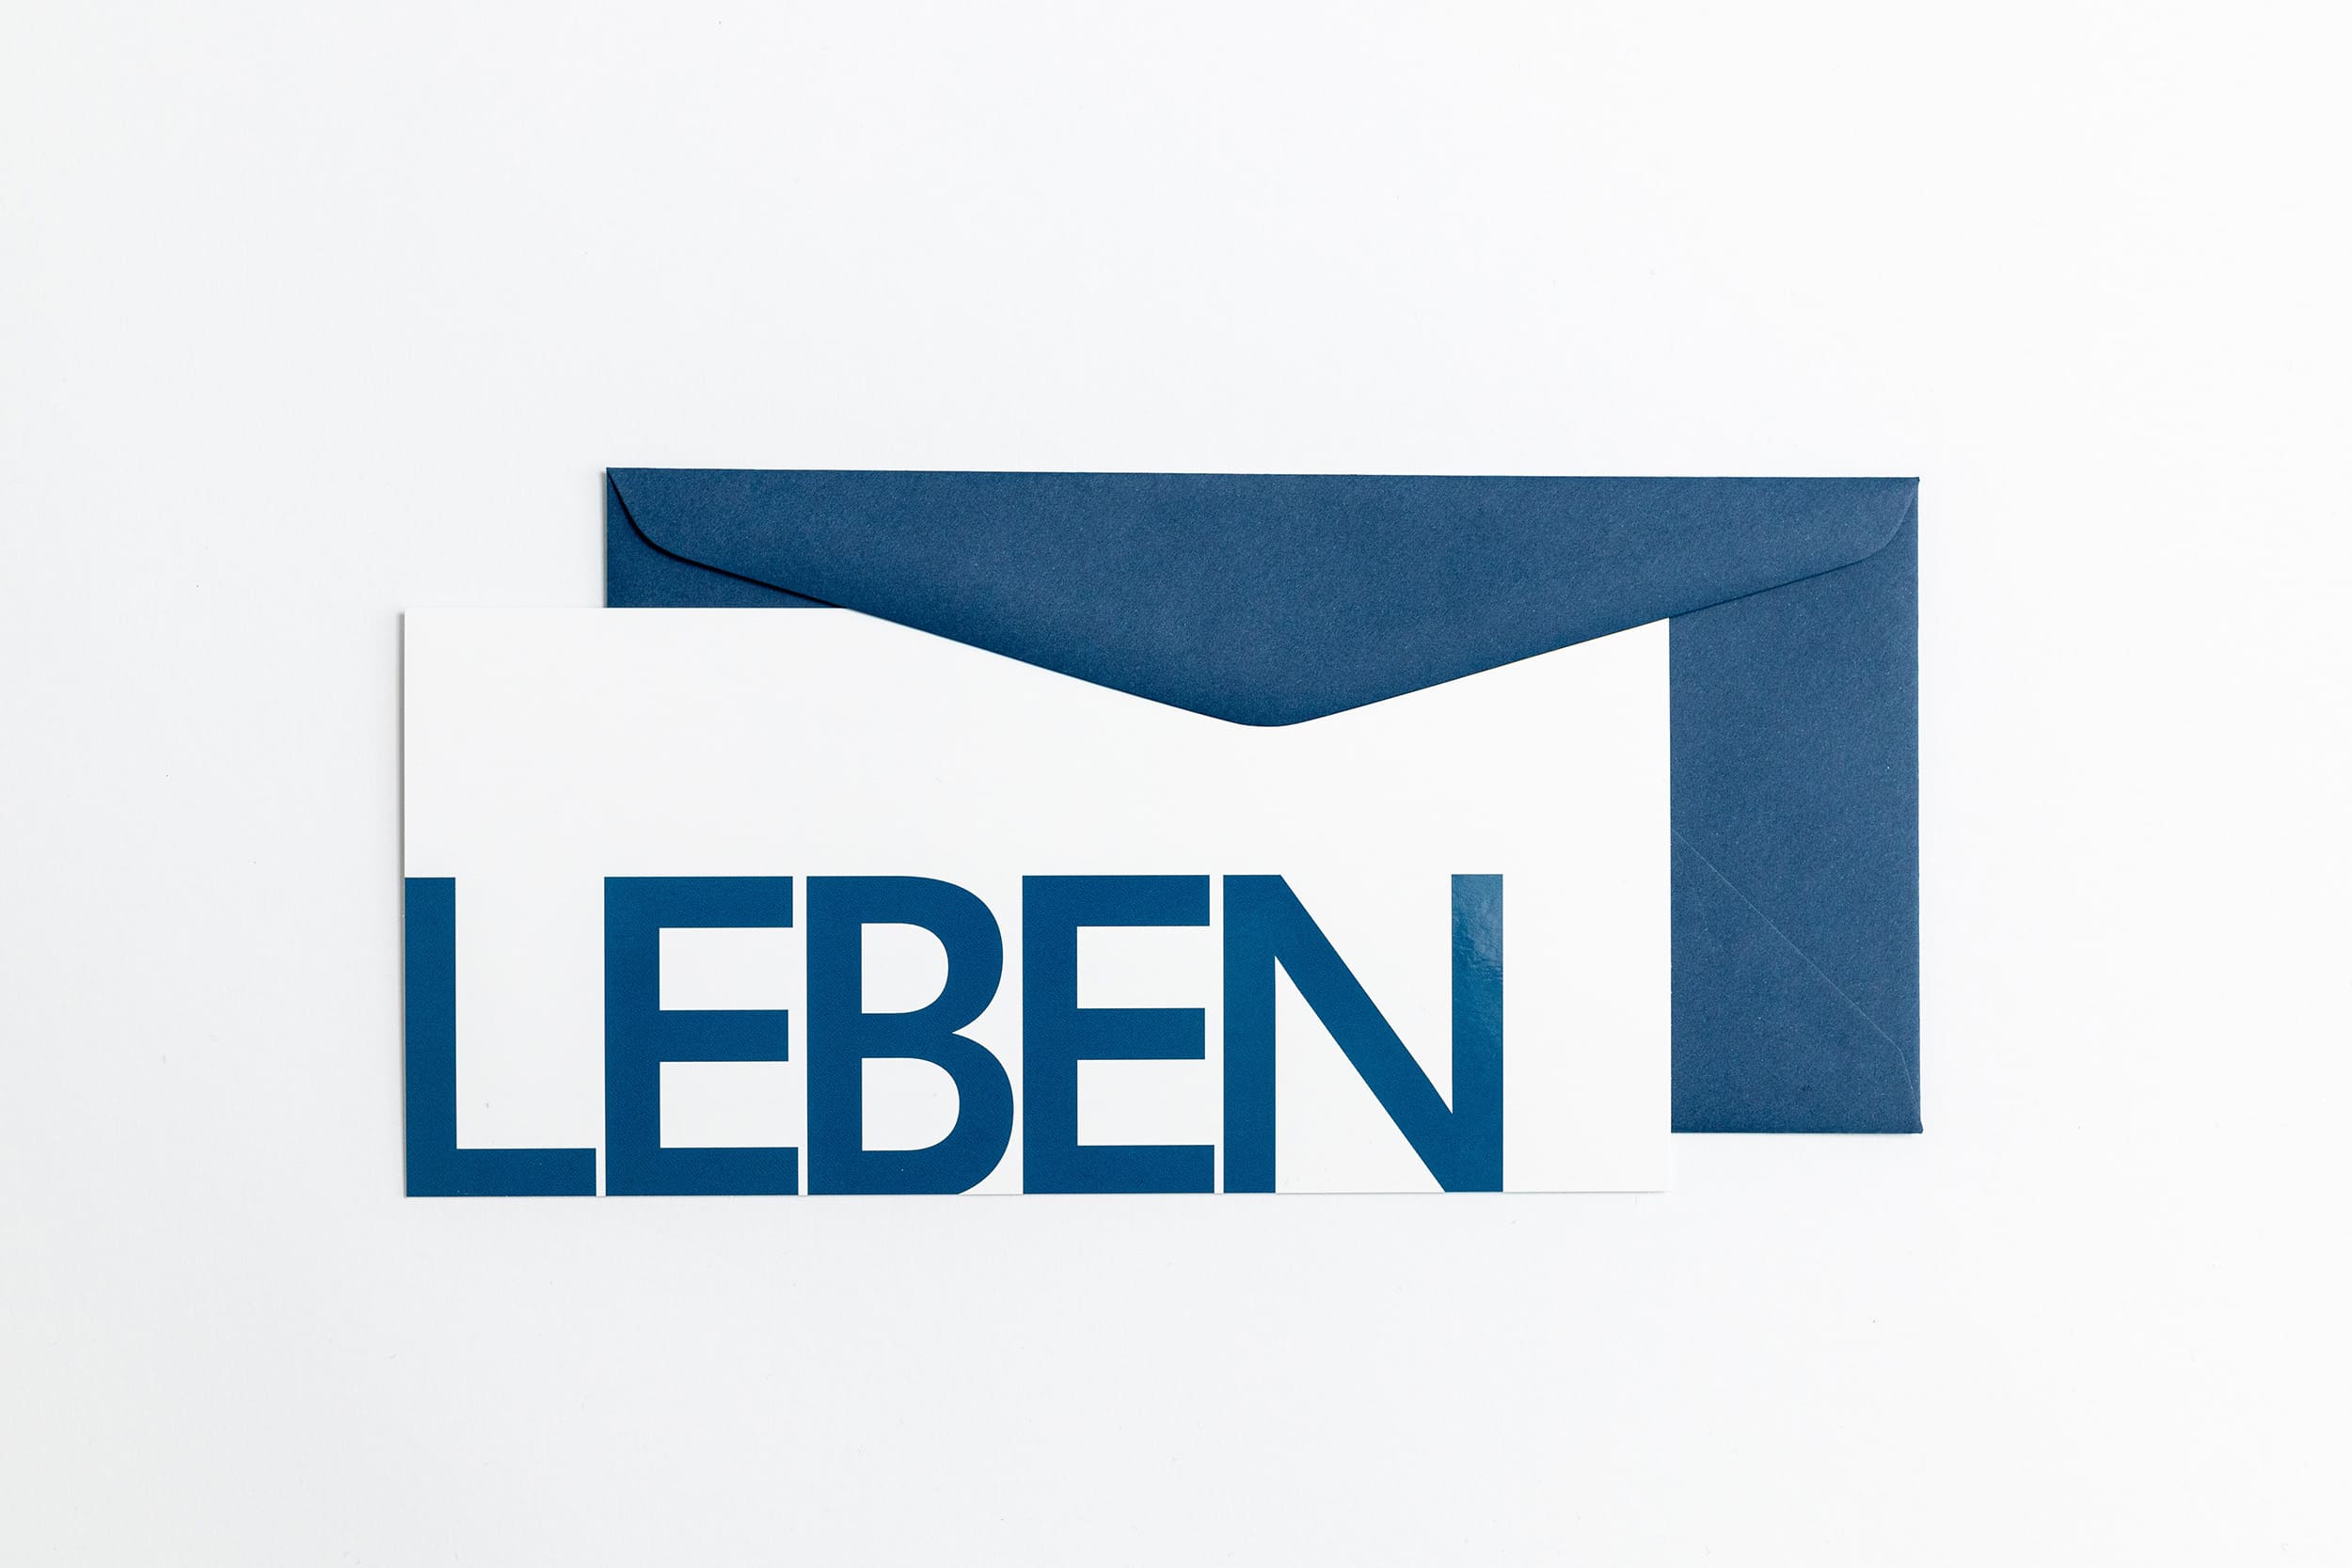 Grußkarte "LEBEN" mit dunkelblauem Briefumschlag